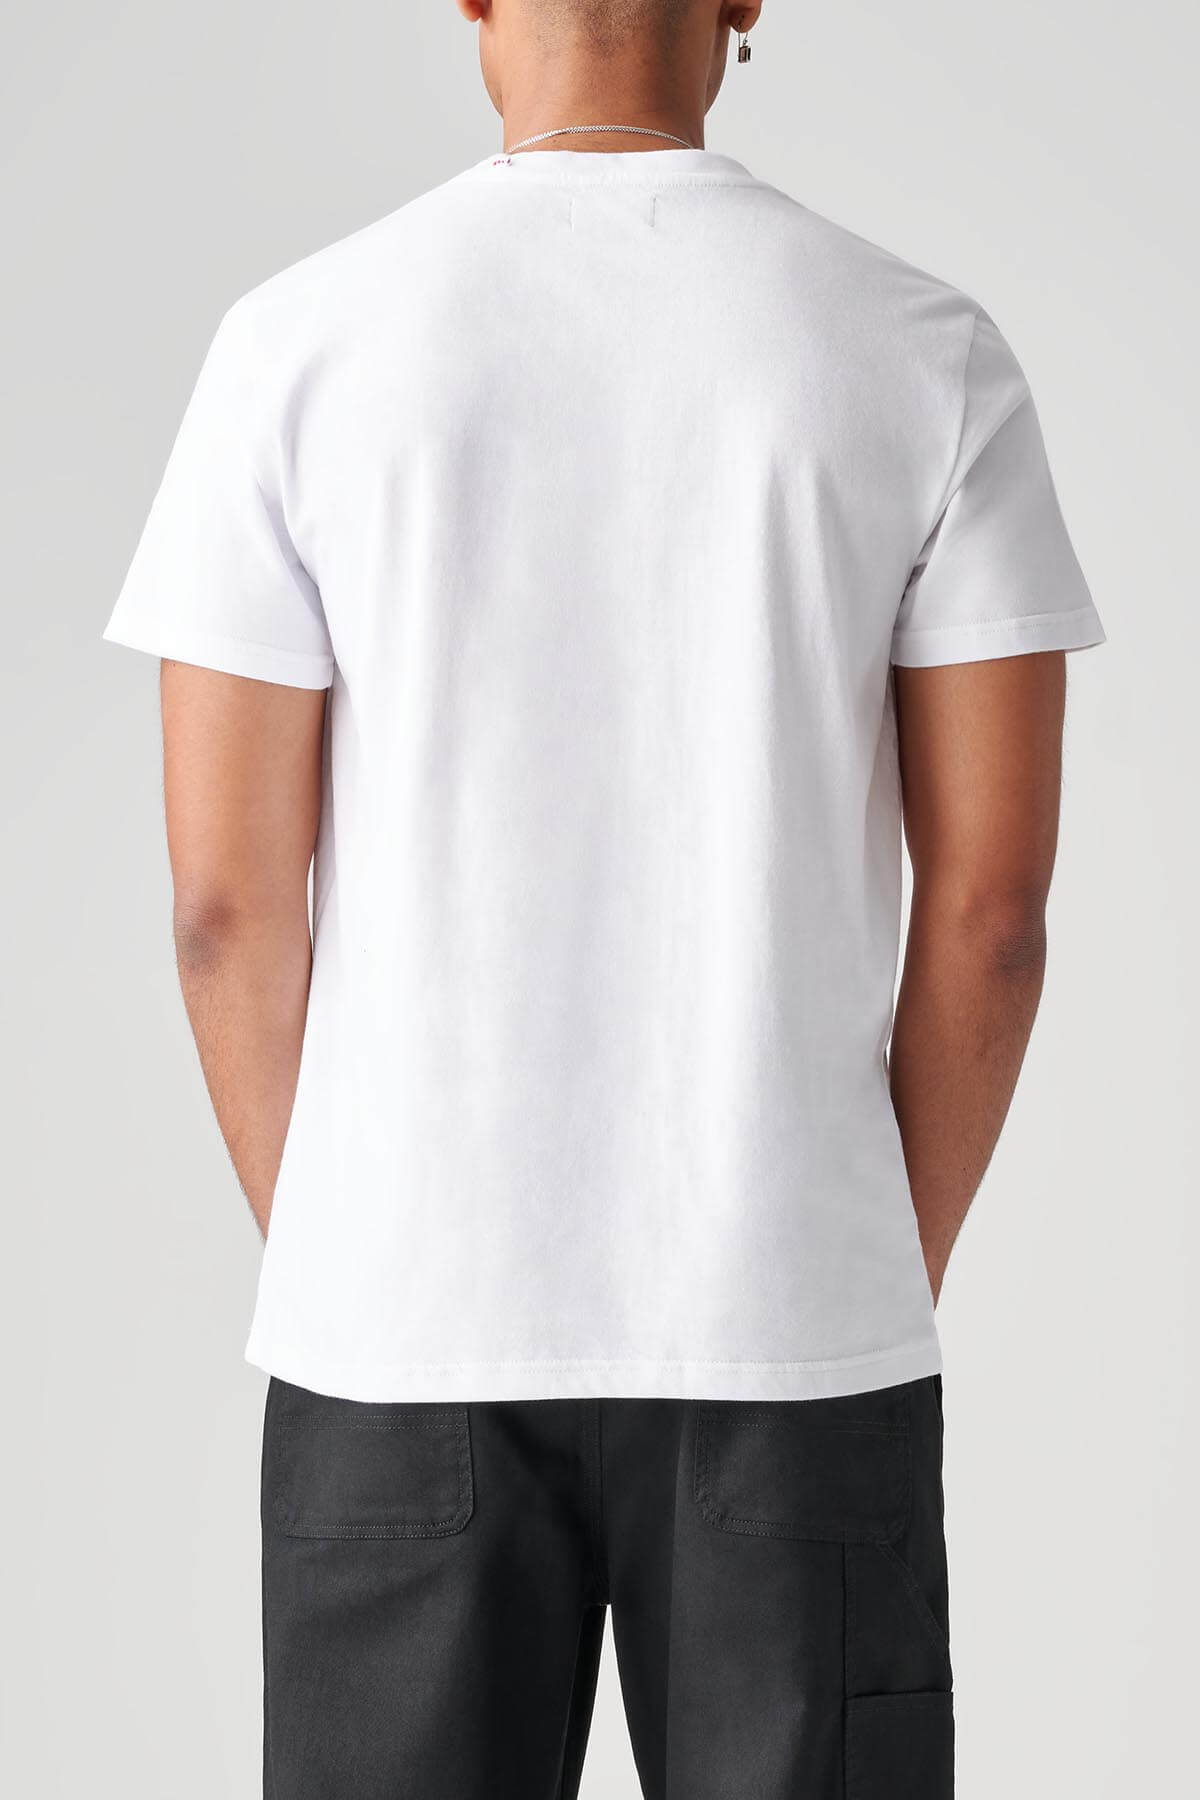 t-shirt de espreitar white